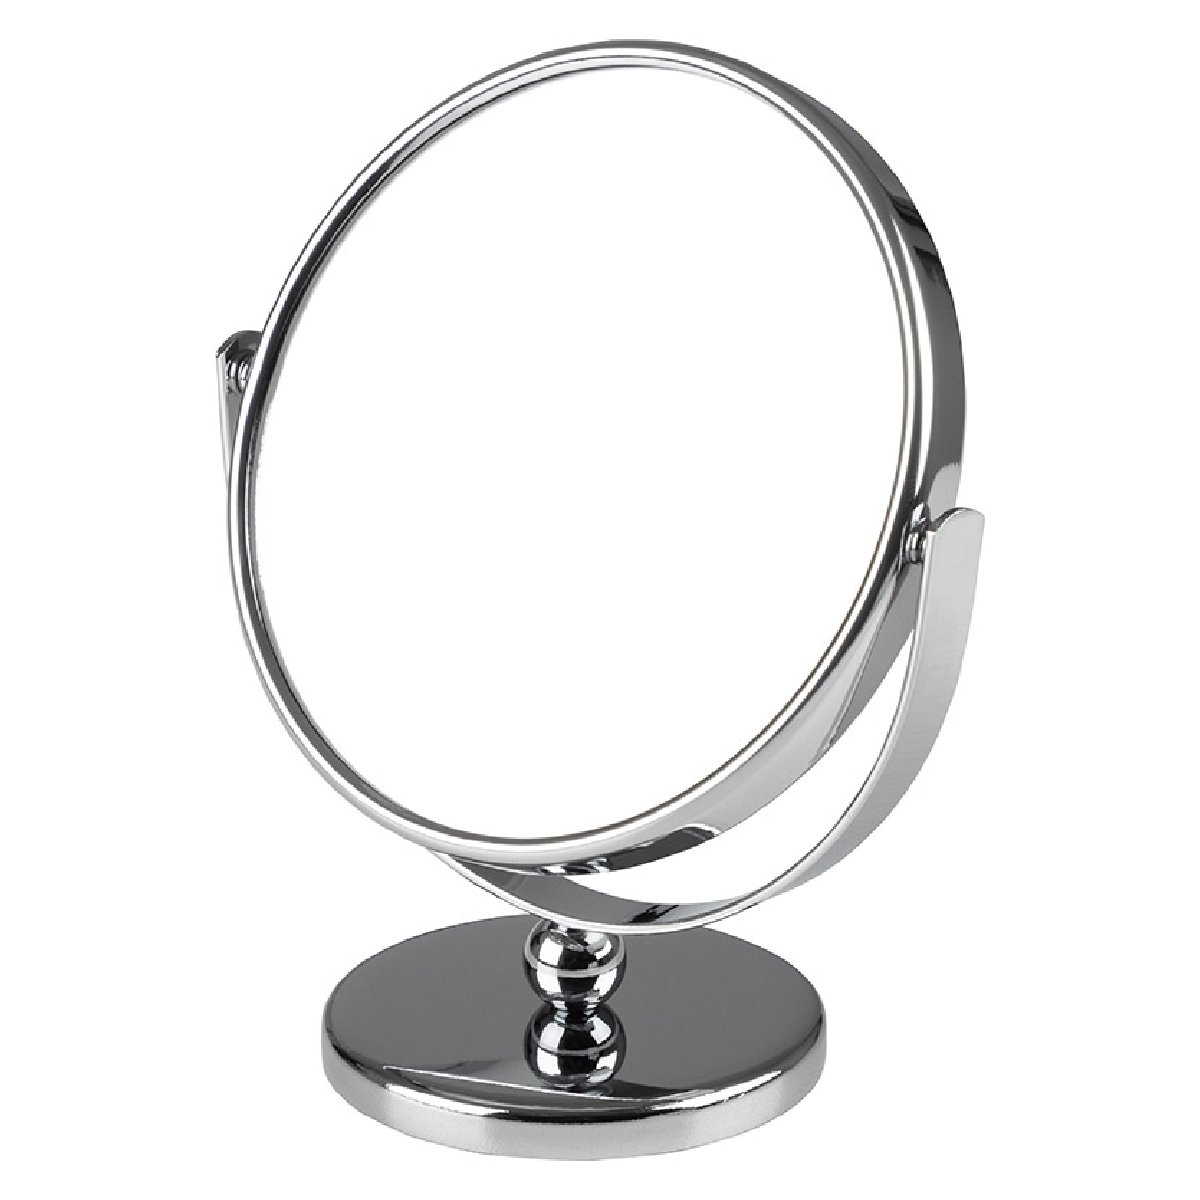 Зеркало косметическое M-3135, двухстороннее на ножке (диам.12.5см, хром. металл, стекло) (310453)Купить